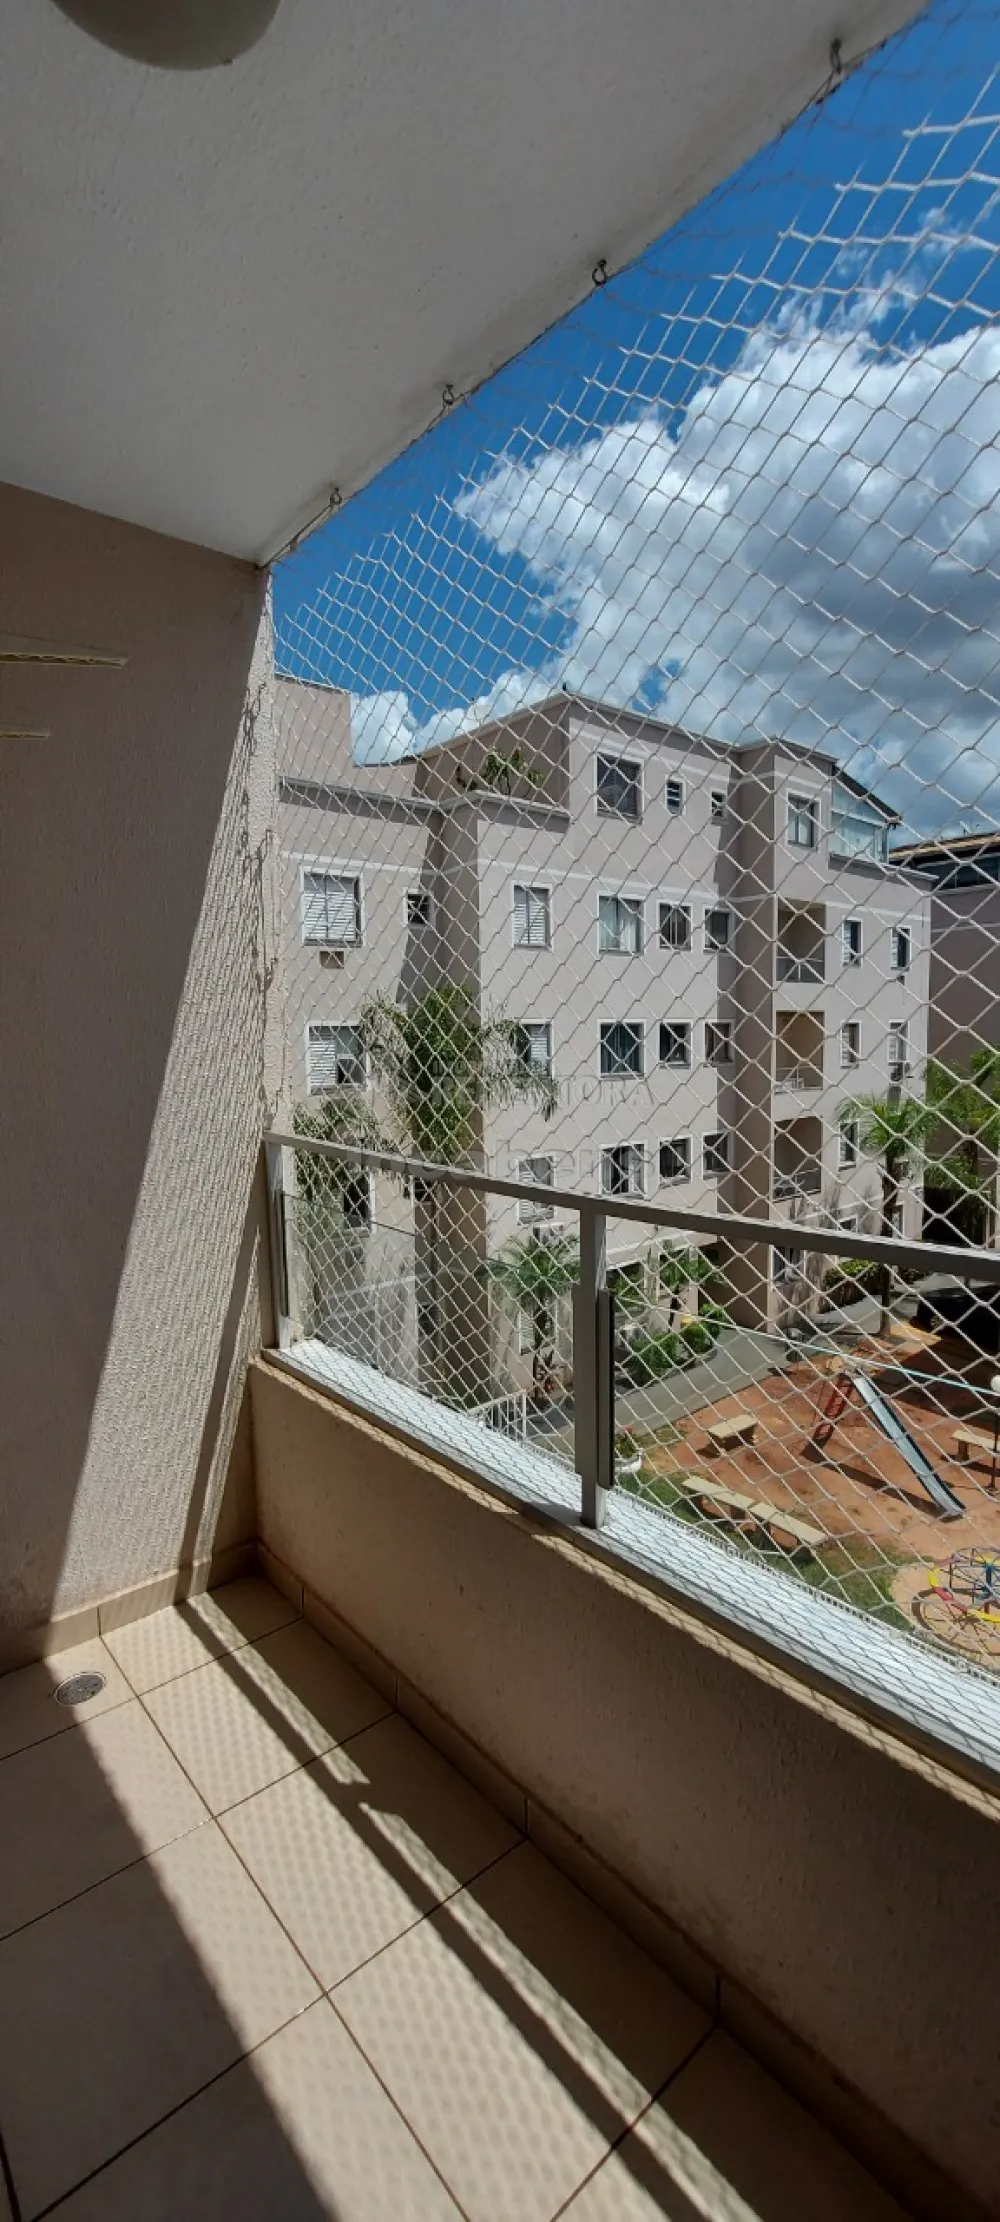 Alugar Apartamento / Padrão em São José do Rio Preto apenas R$ 1.200,00 - Foto 1